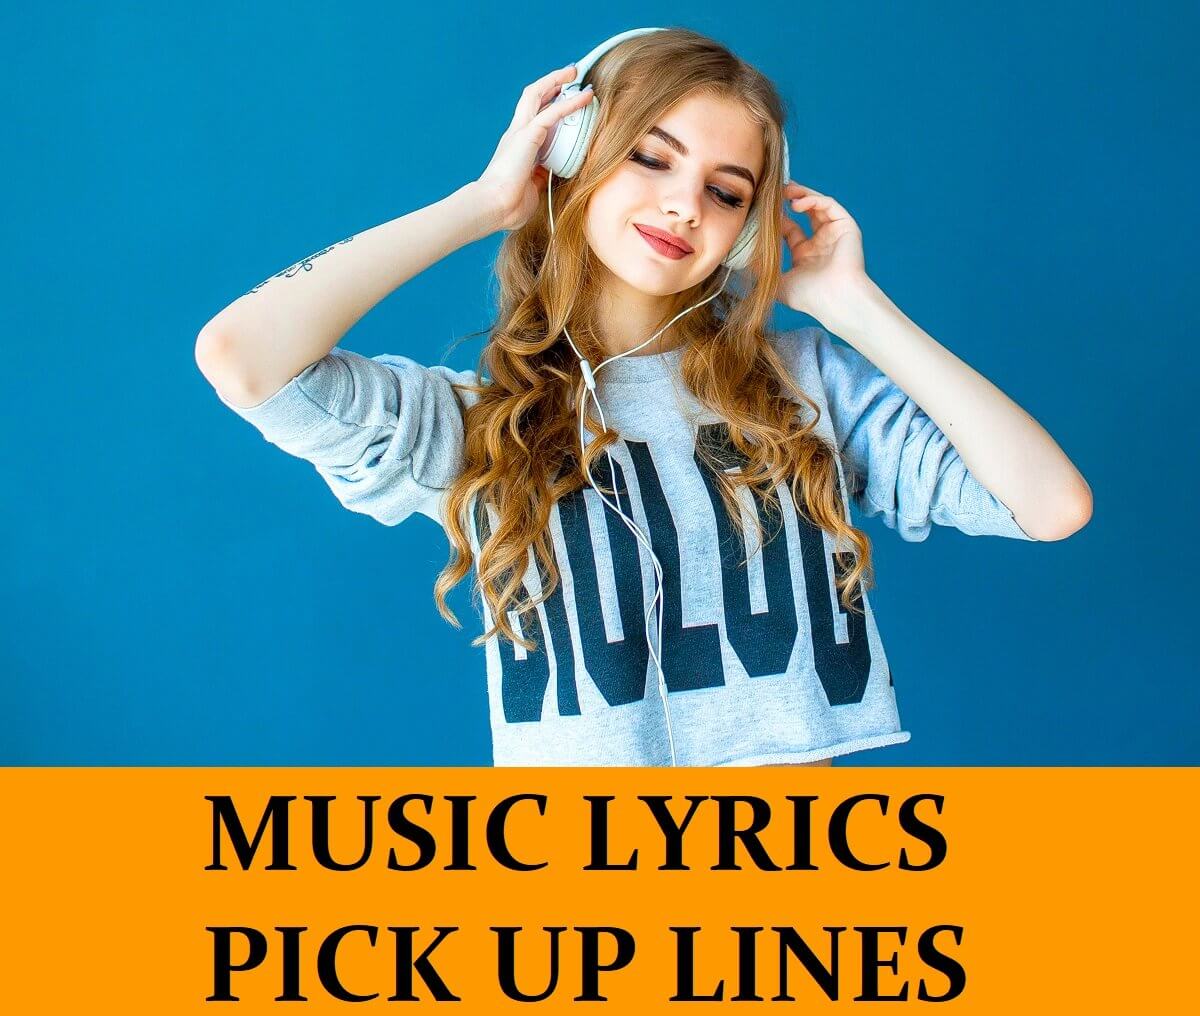 Pick Up Lines Based on Music Lyrics